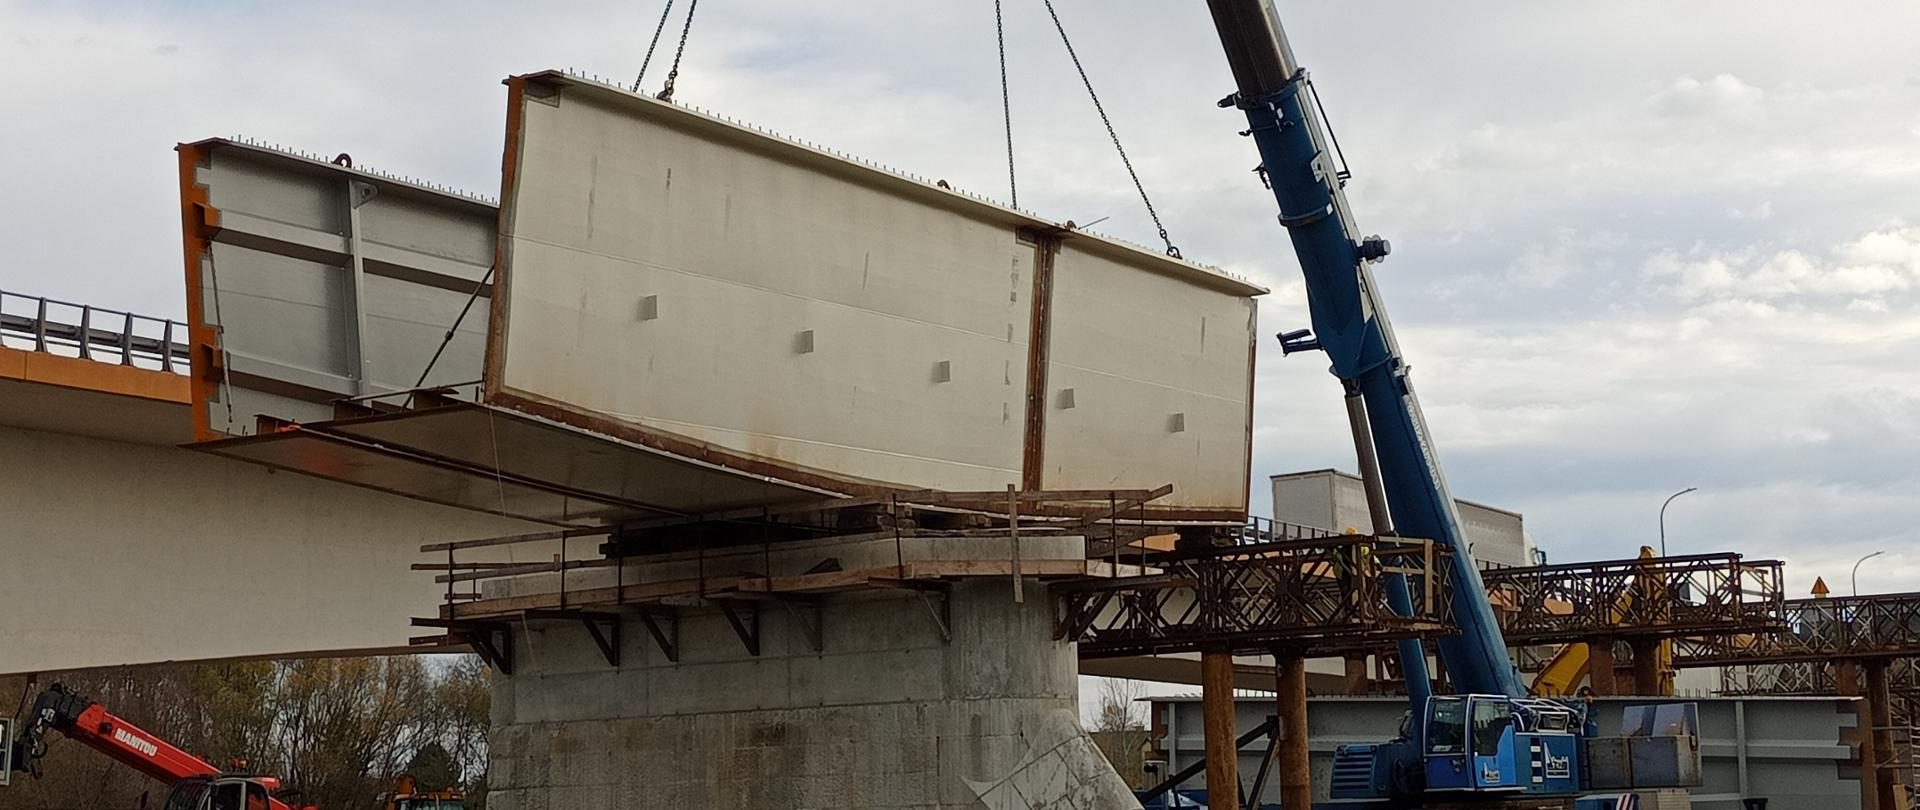 Budowa mostu w Sandomierzu - umieszczanie stalowego elementu konstrukcji na betonowej podporze z pomocą dźwigu. 